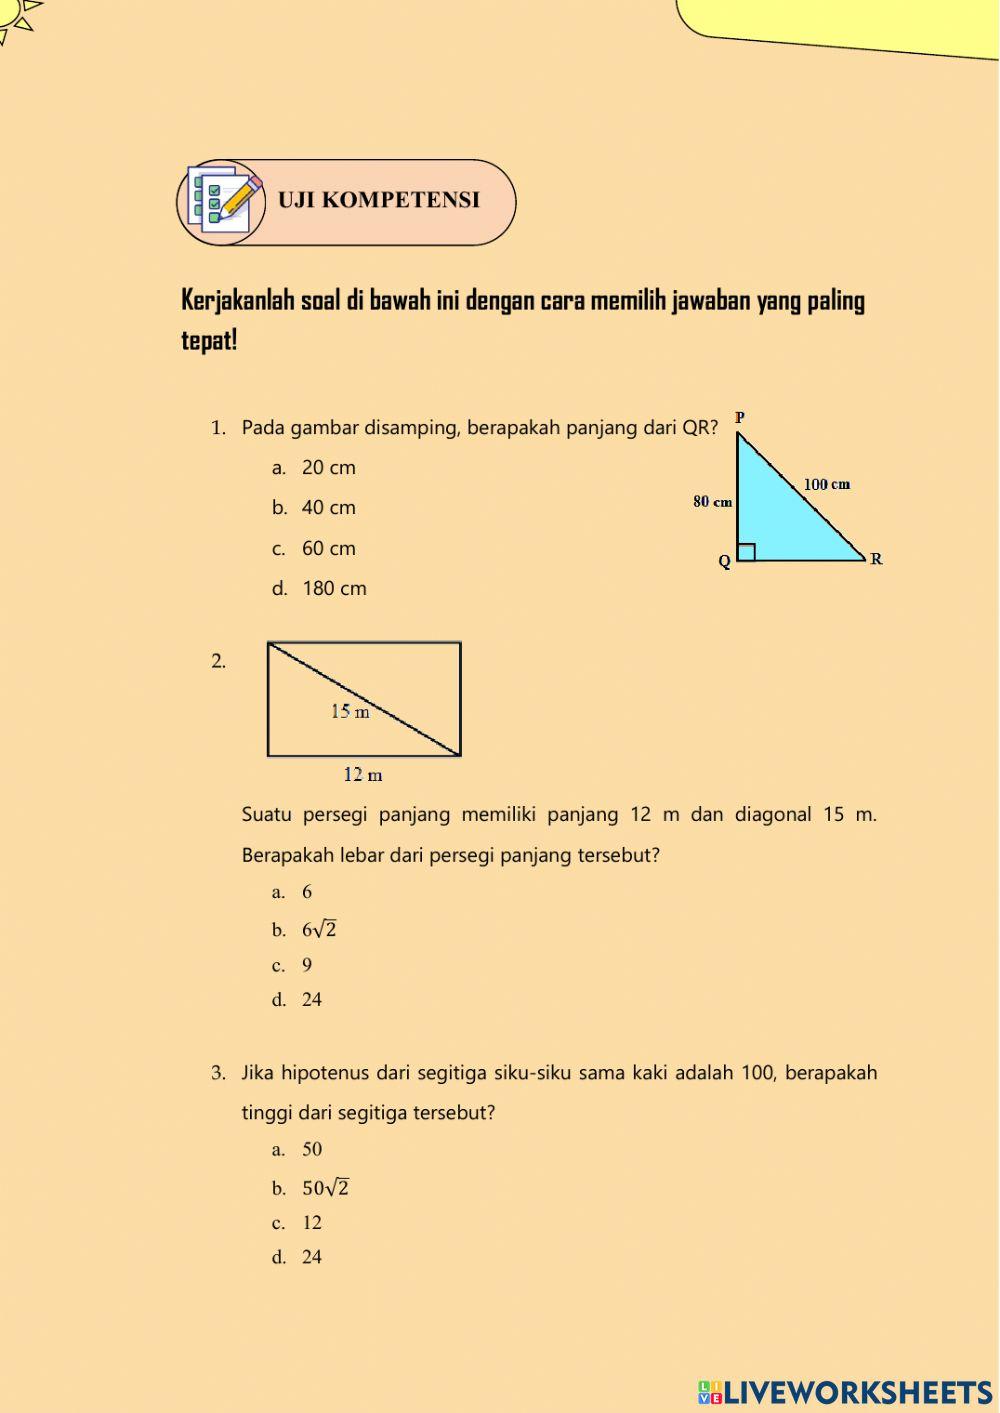 E-LKPD Teorema Pythagoras